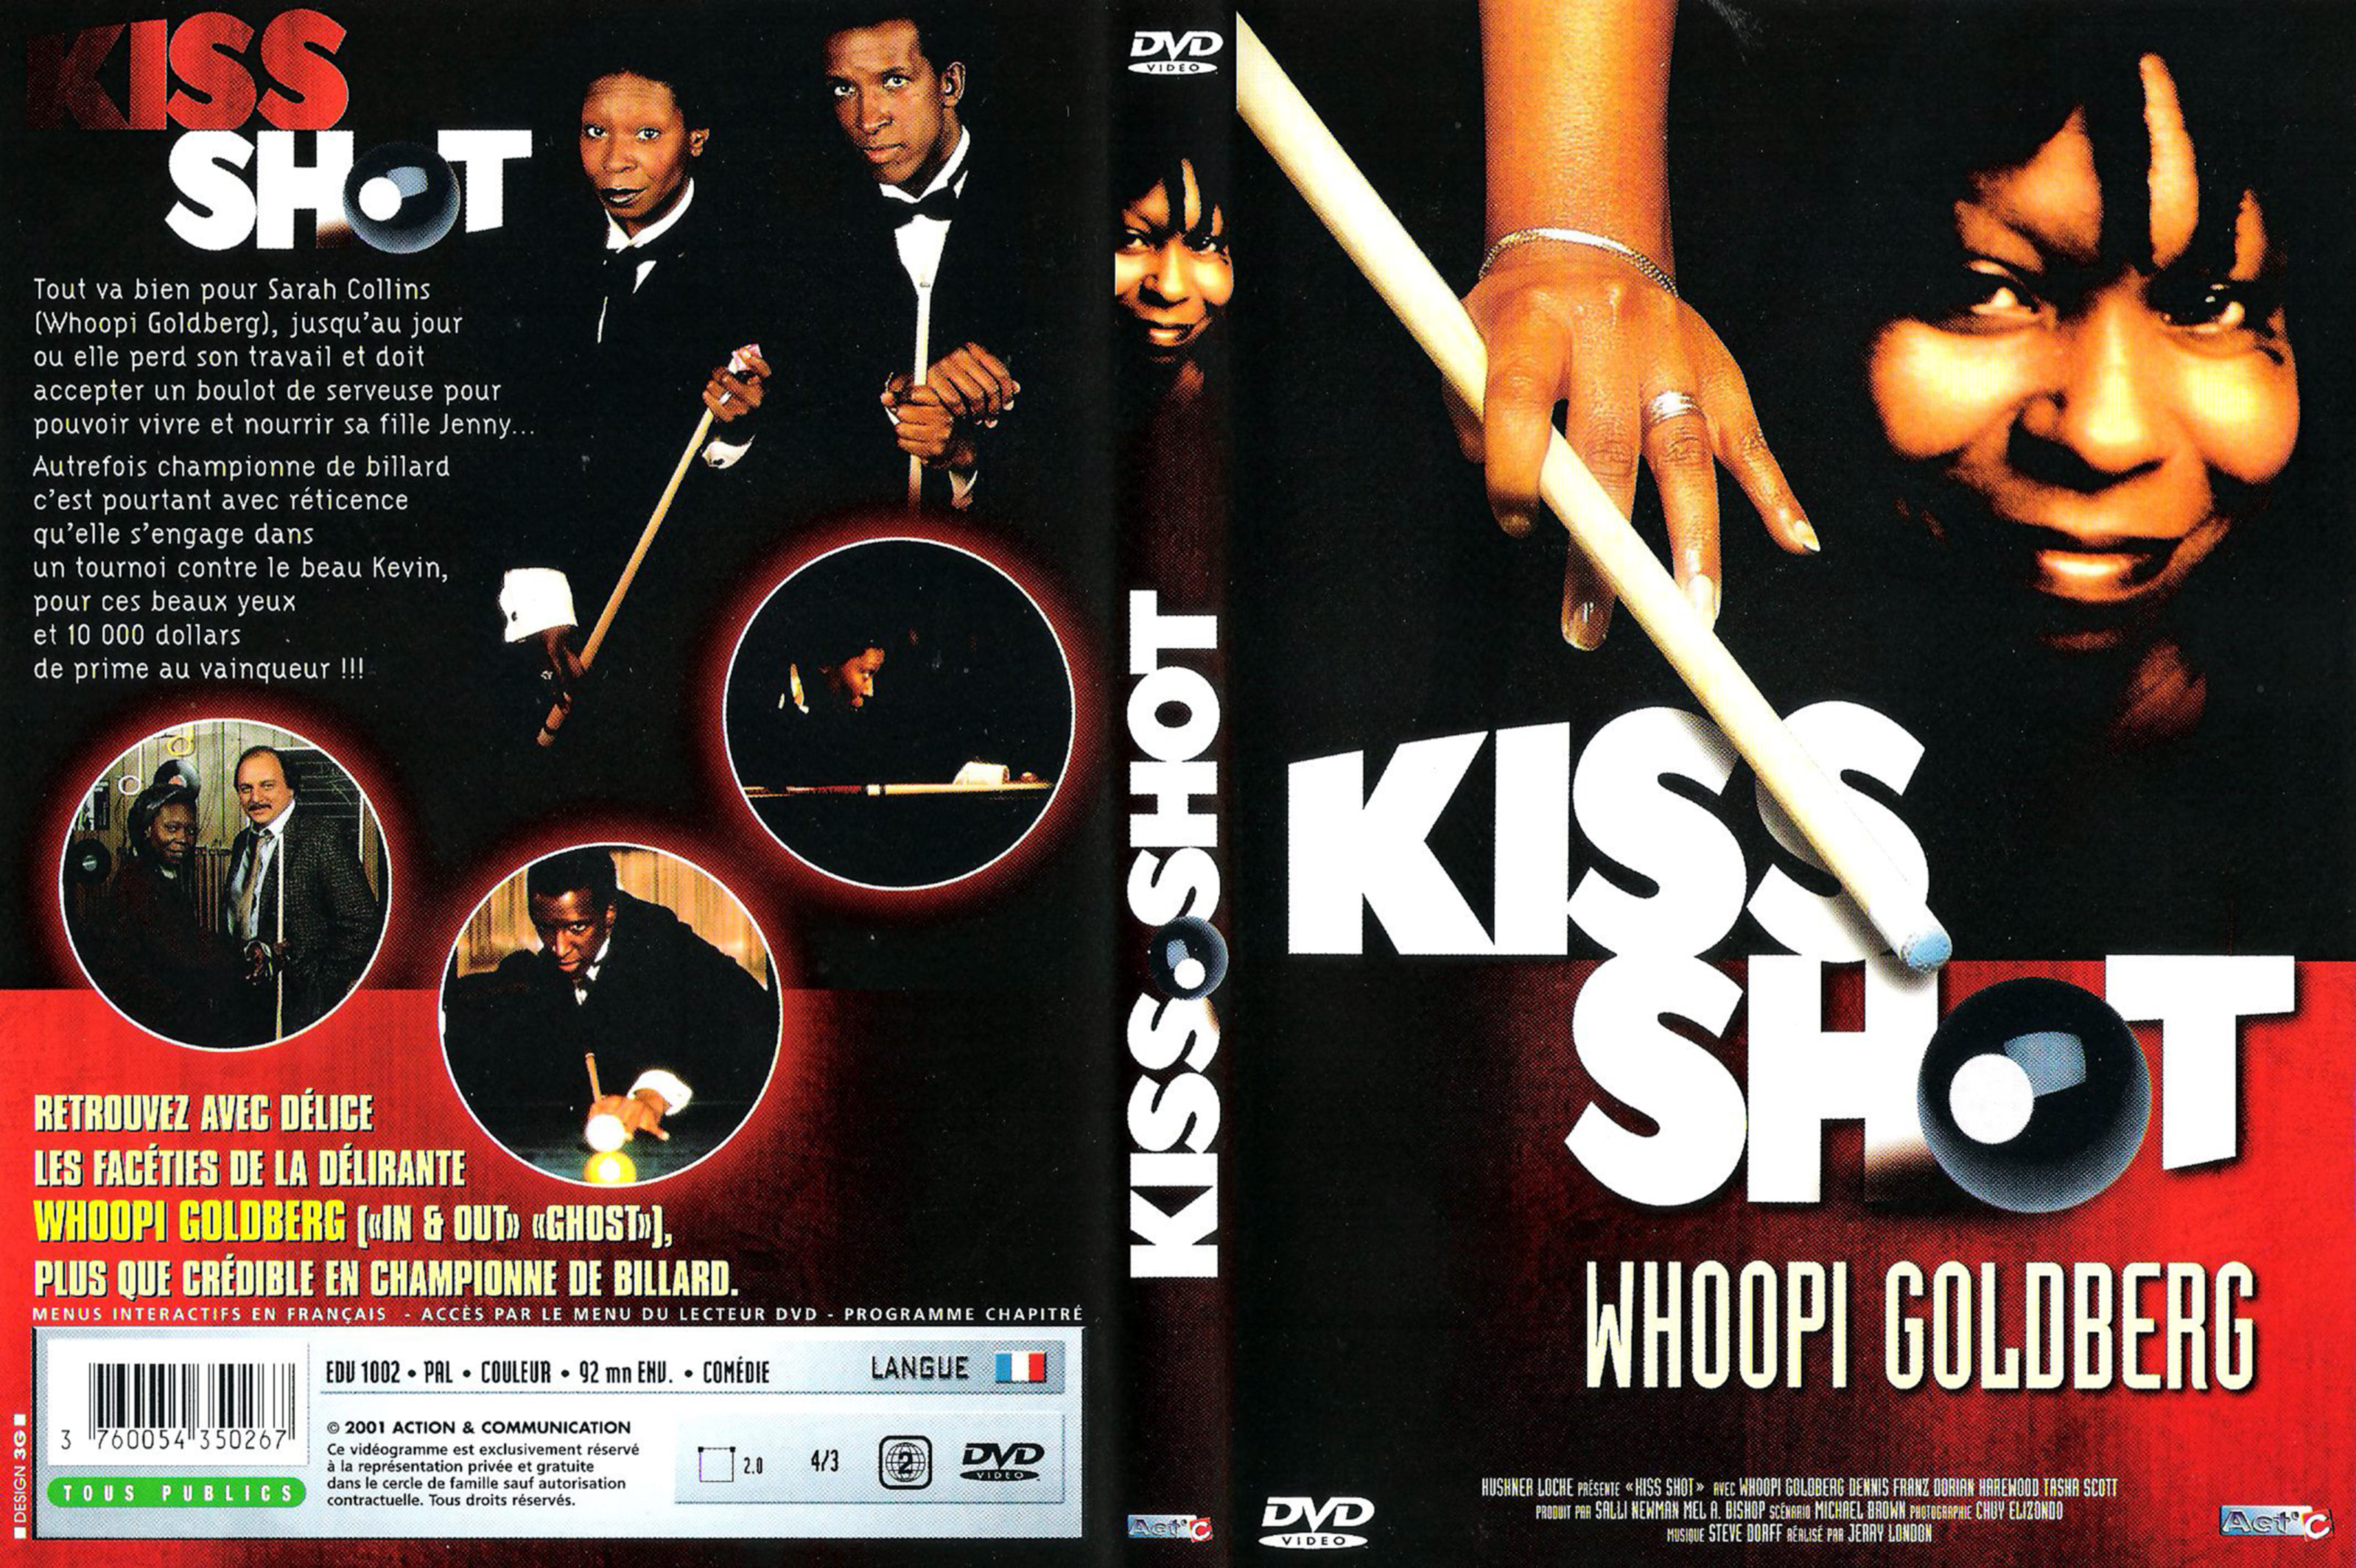 Jaquette DVD Kiss shot